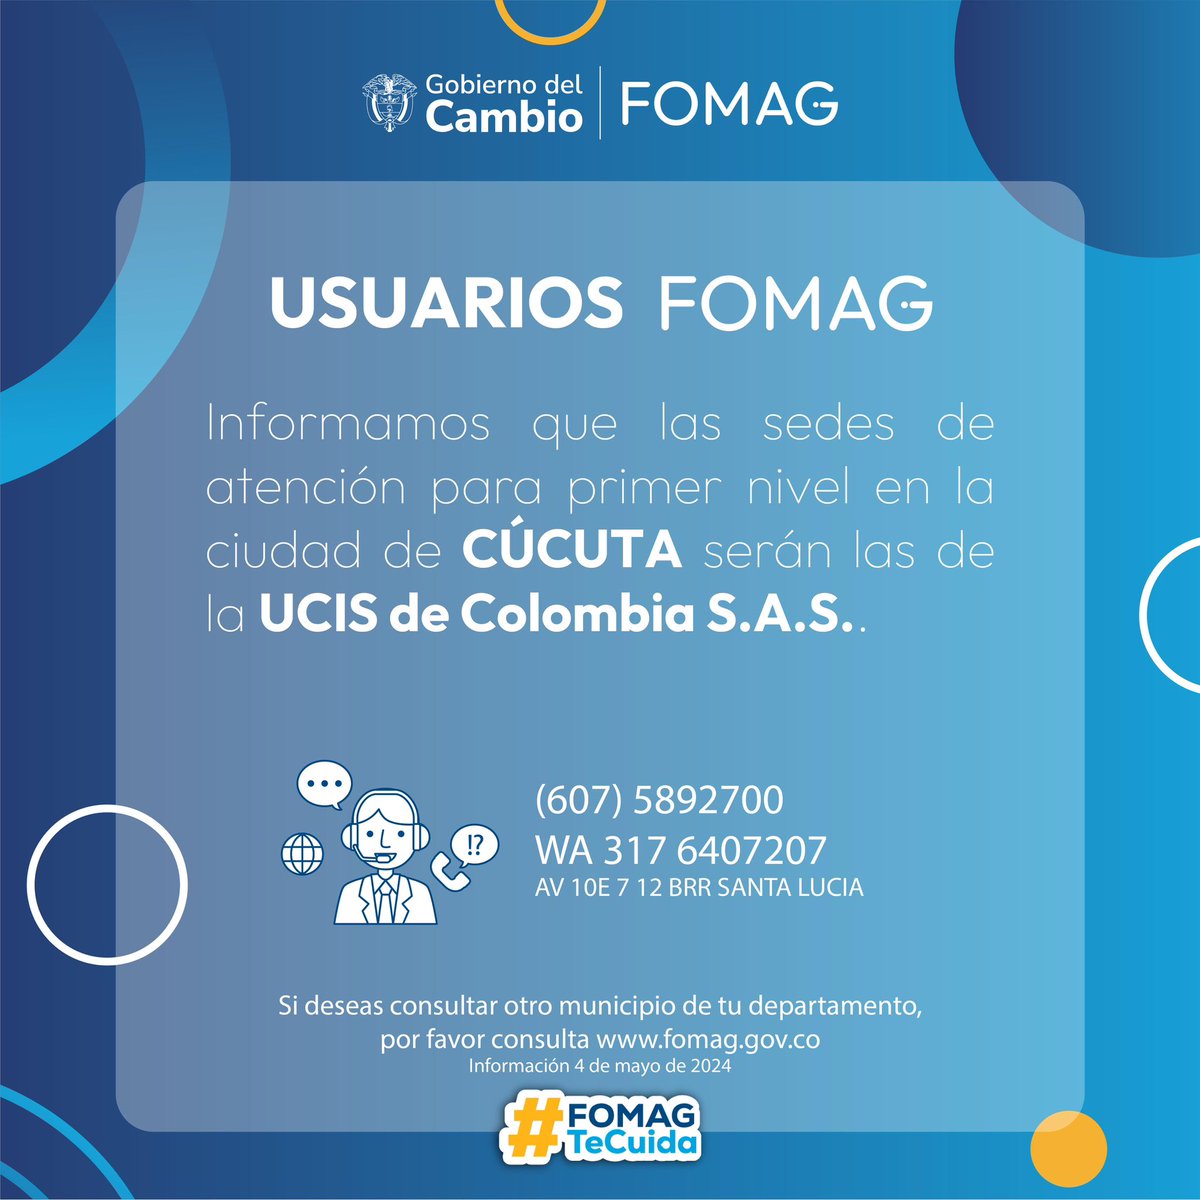 ¡Atención usuarios de FOMAG en Mocoa, Manizales, Florencia, Cúcuta. Ya puedes encontrar tus servicios de primer nivel en las siguiente sedes. Tu salud es nuestra prioridad. #FomagTeCuida